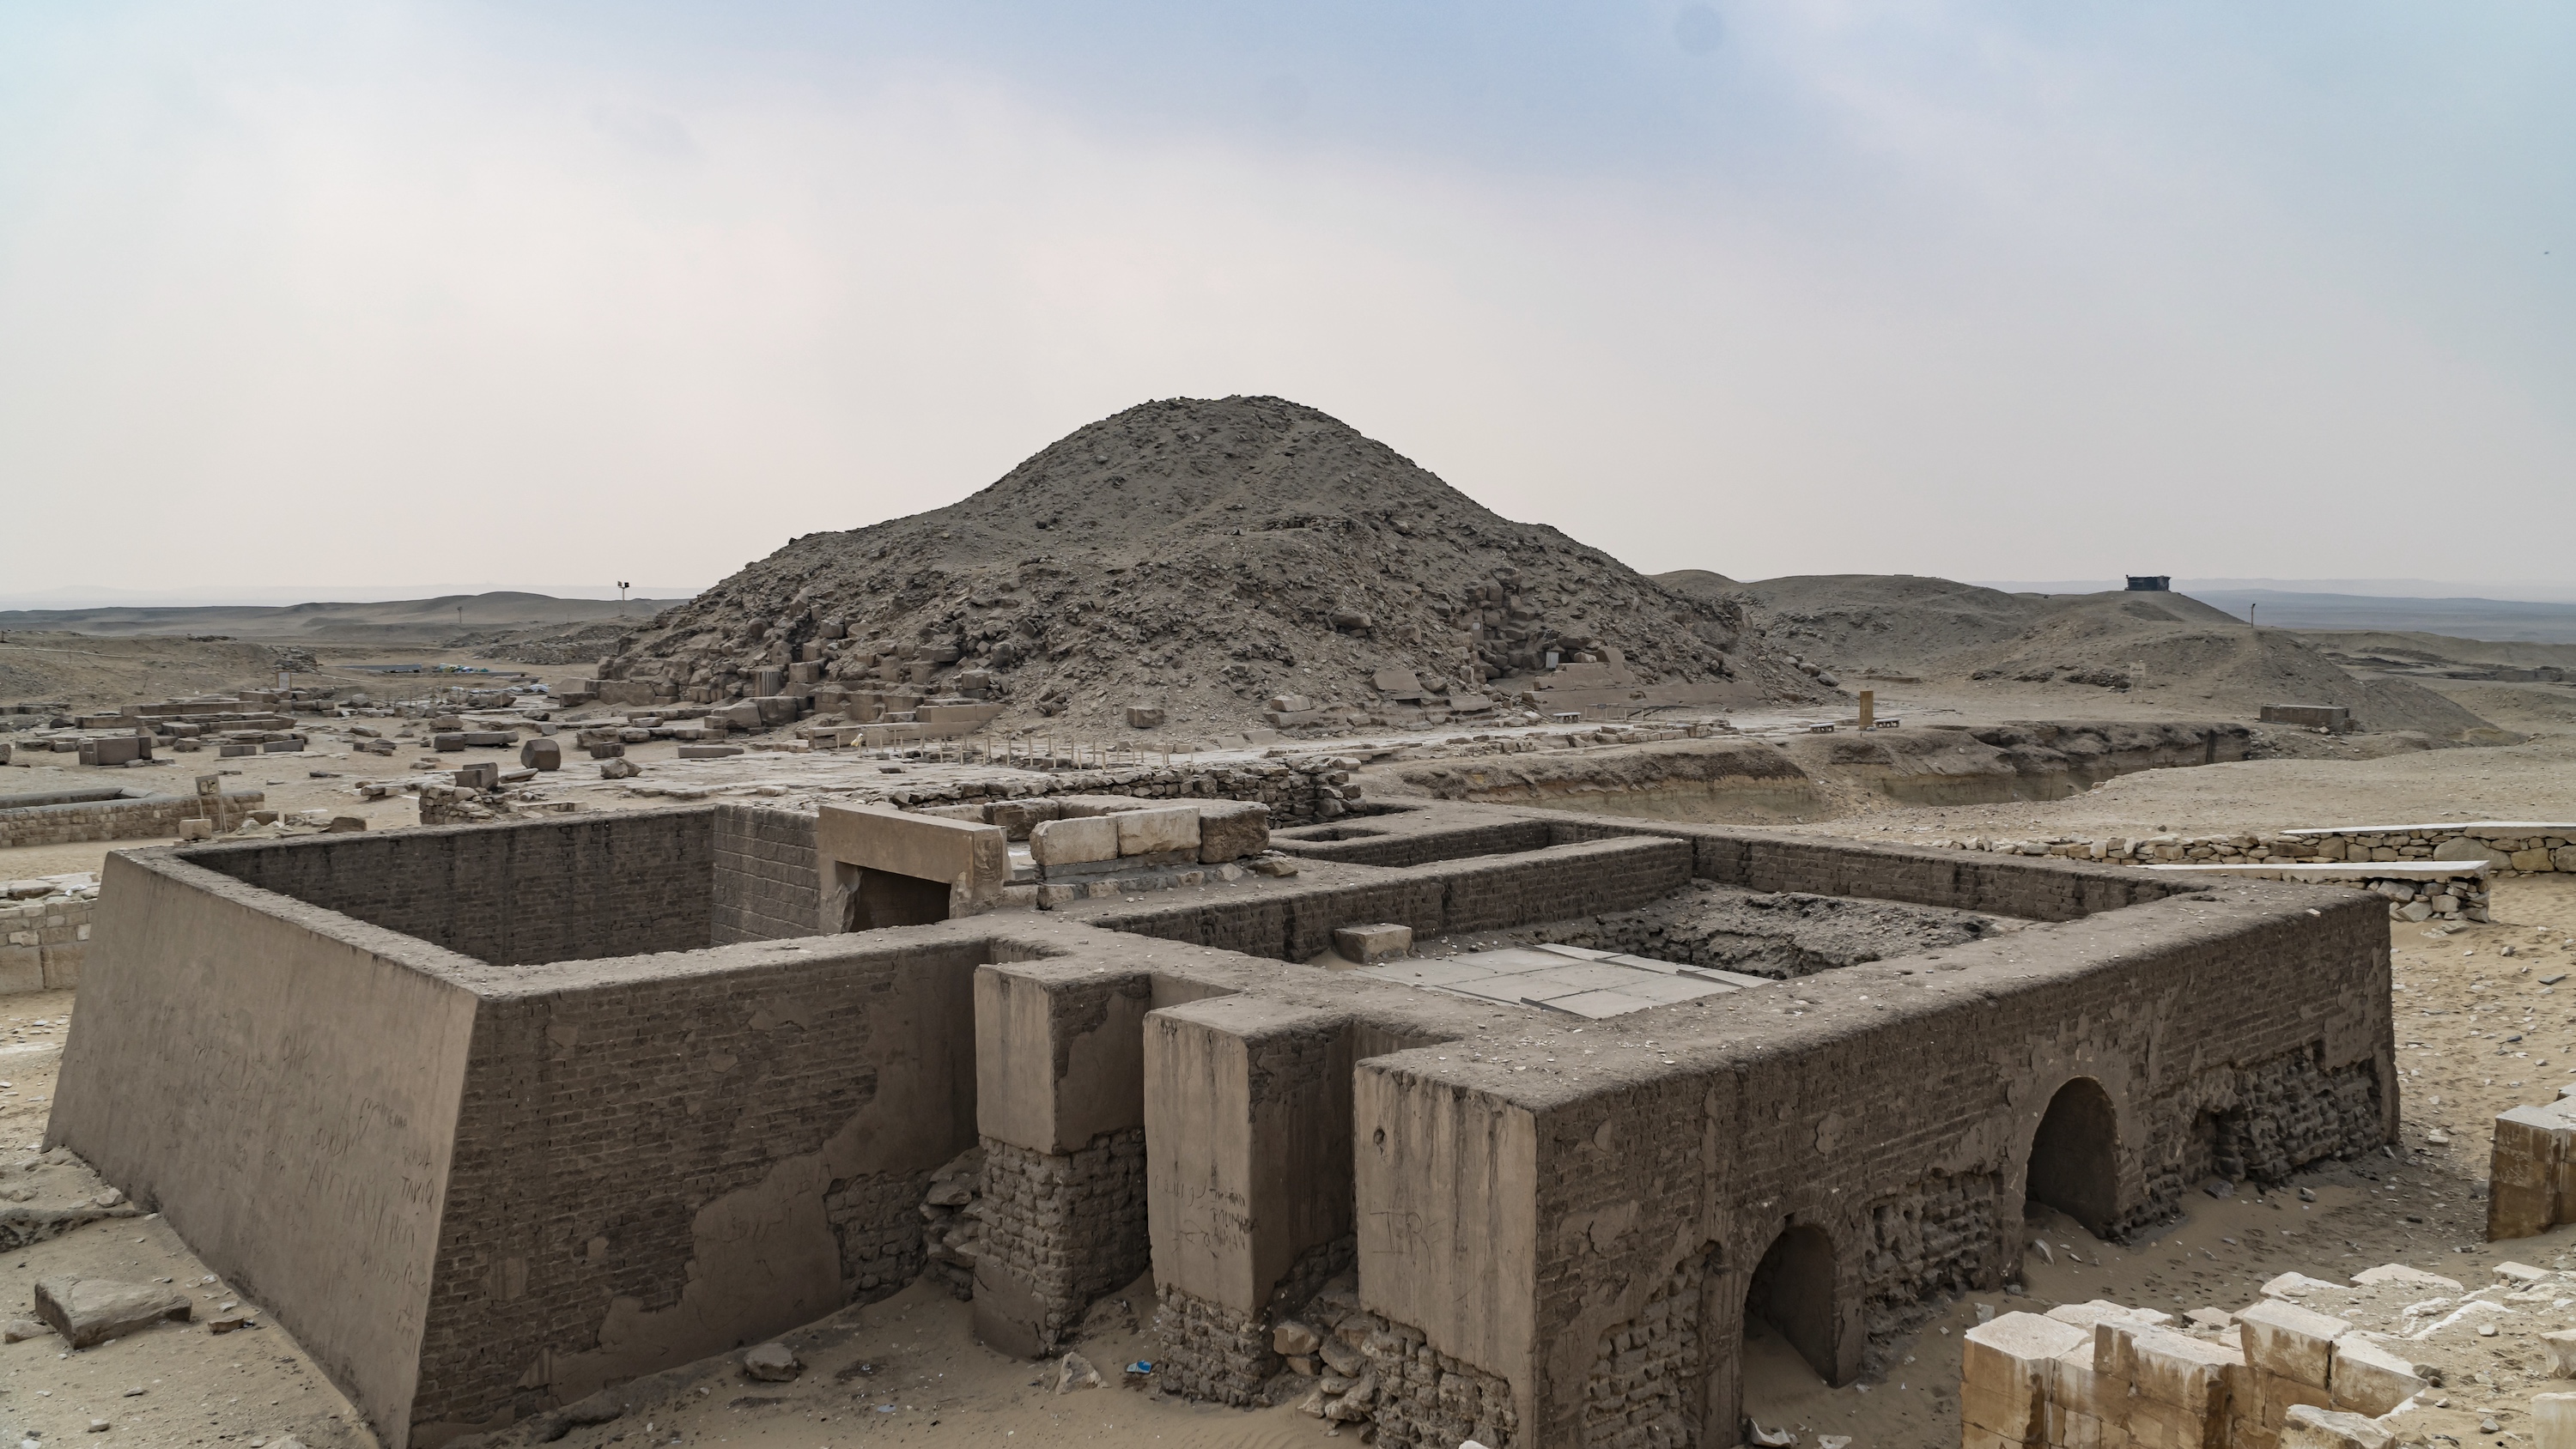 Le site de la nécropole de Saqqara dominé par la pyramide à degré de Djézer. © merlin74, Adobe Stock